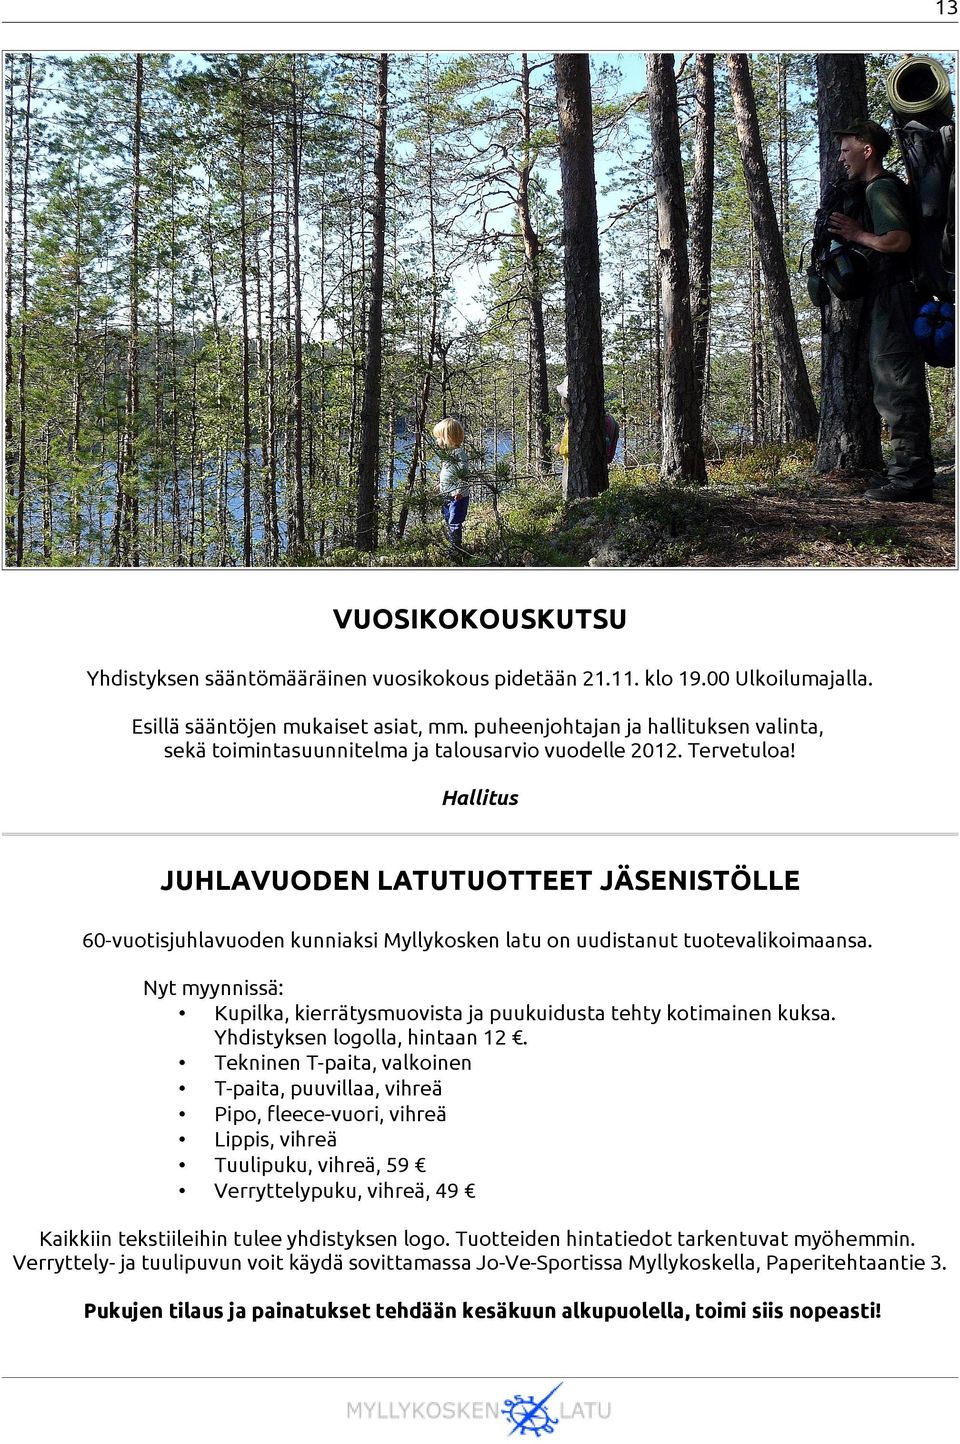 Hallitus JUHLAVUODEN LATUTUOTTEET JÄSENISTÖLLE 60-vuotisjuhlavuoden kunniaksi Myllykosken latu on uudistanut tuotevalikoimaansa.